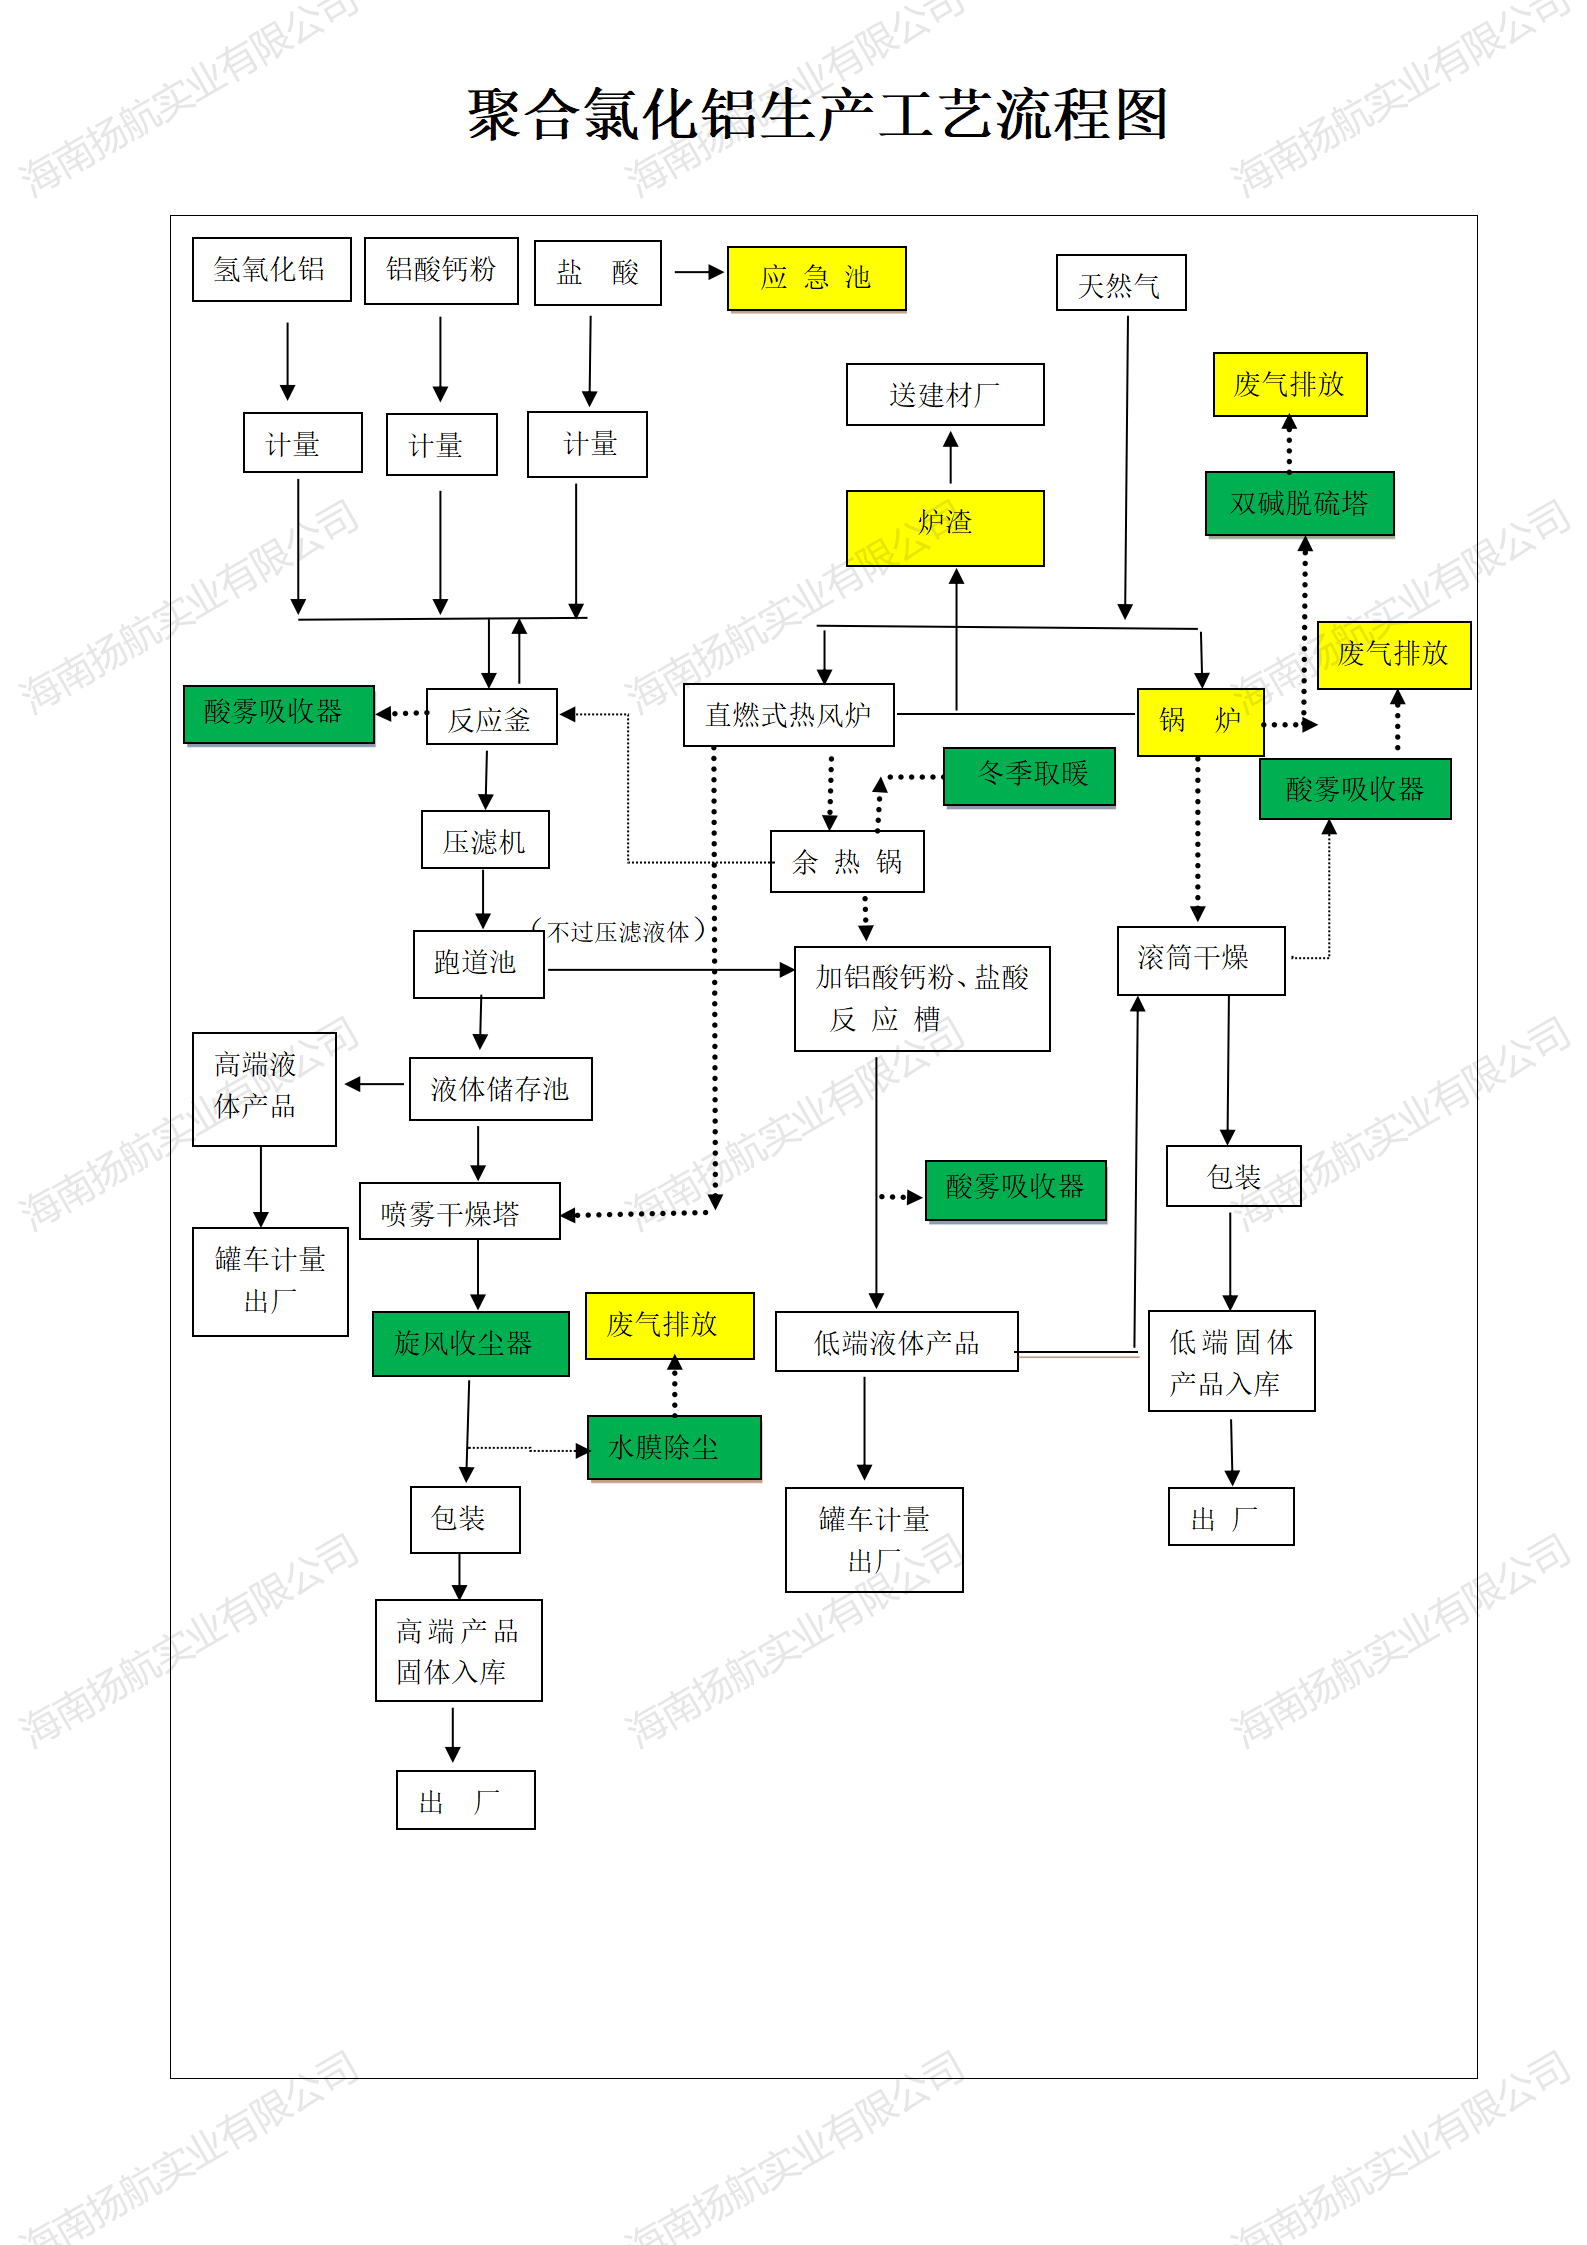 河南乐邦生产工艺流程图 (3)_01.png